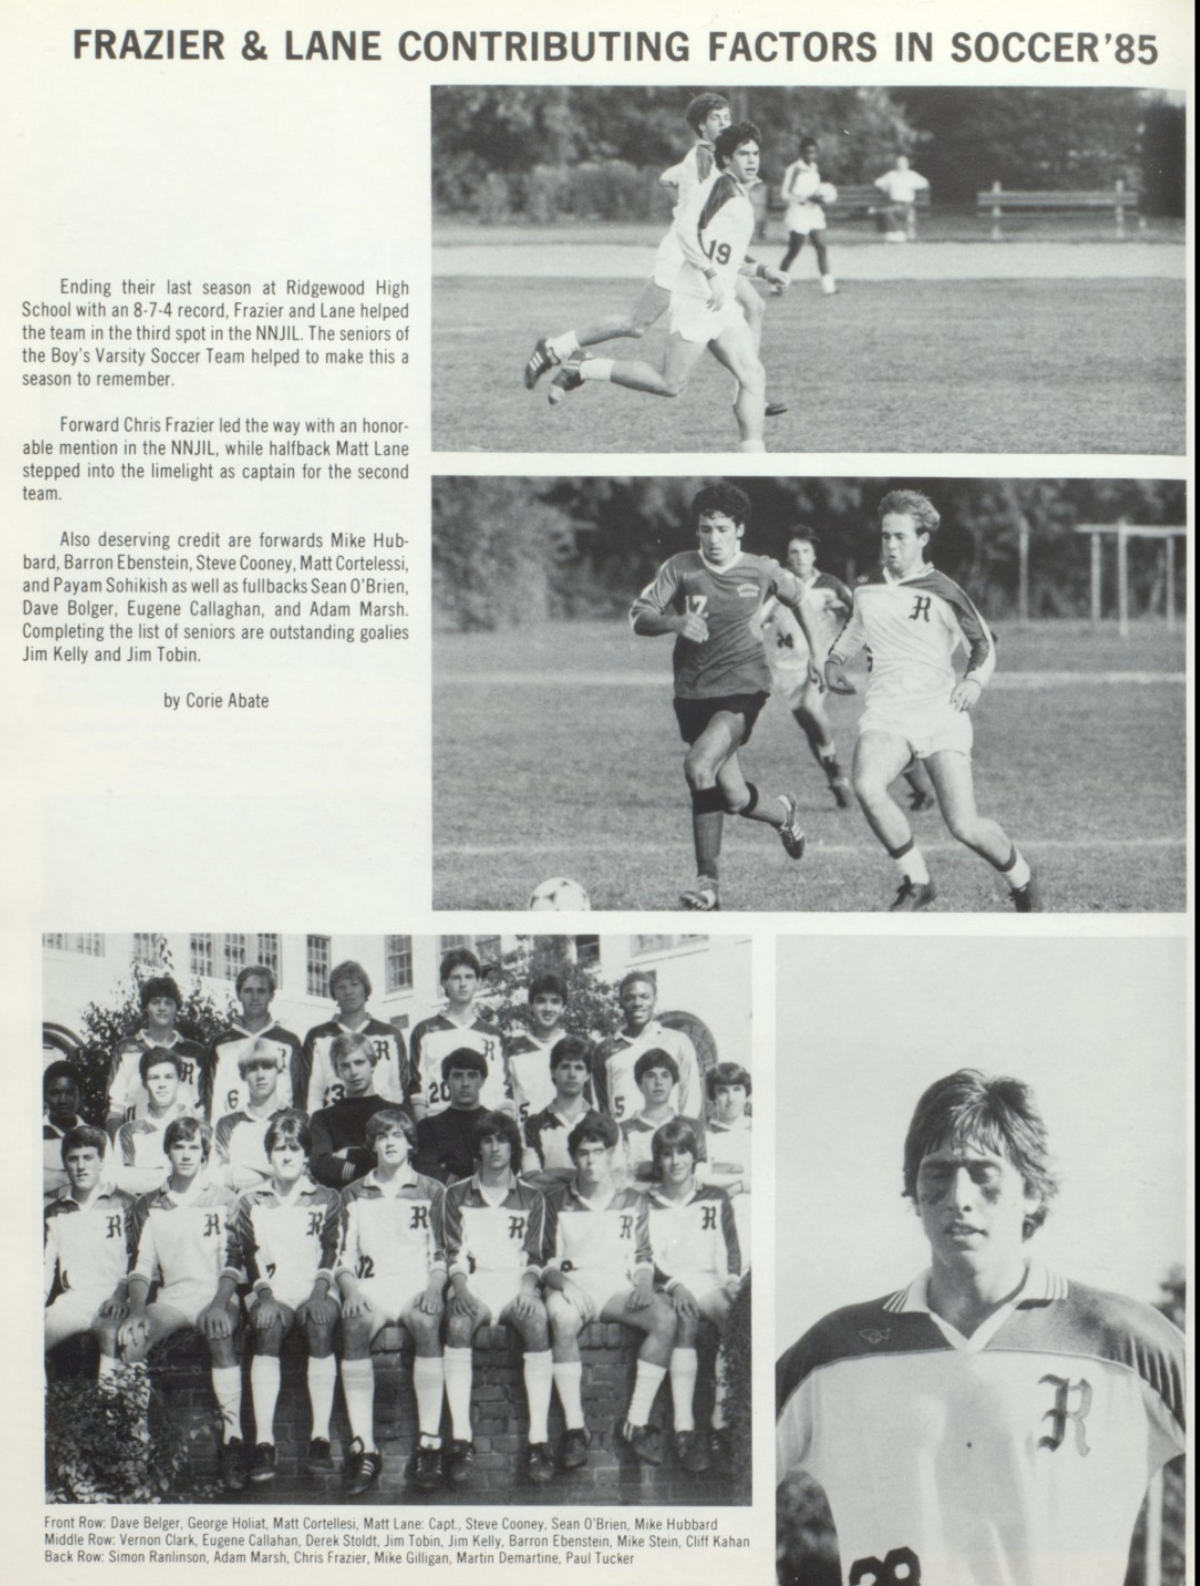 1984 Boys’ Soccer Team